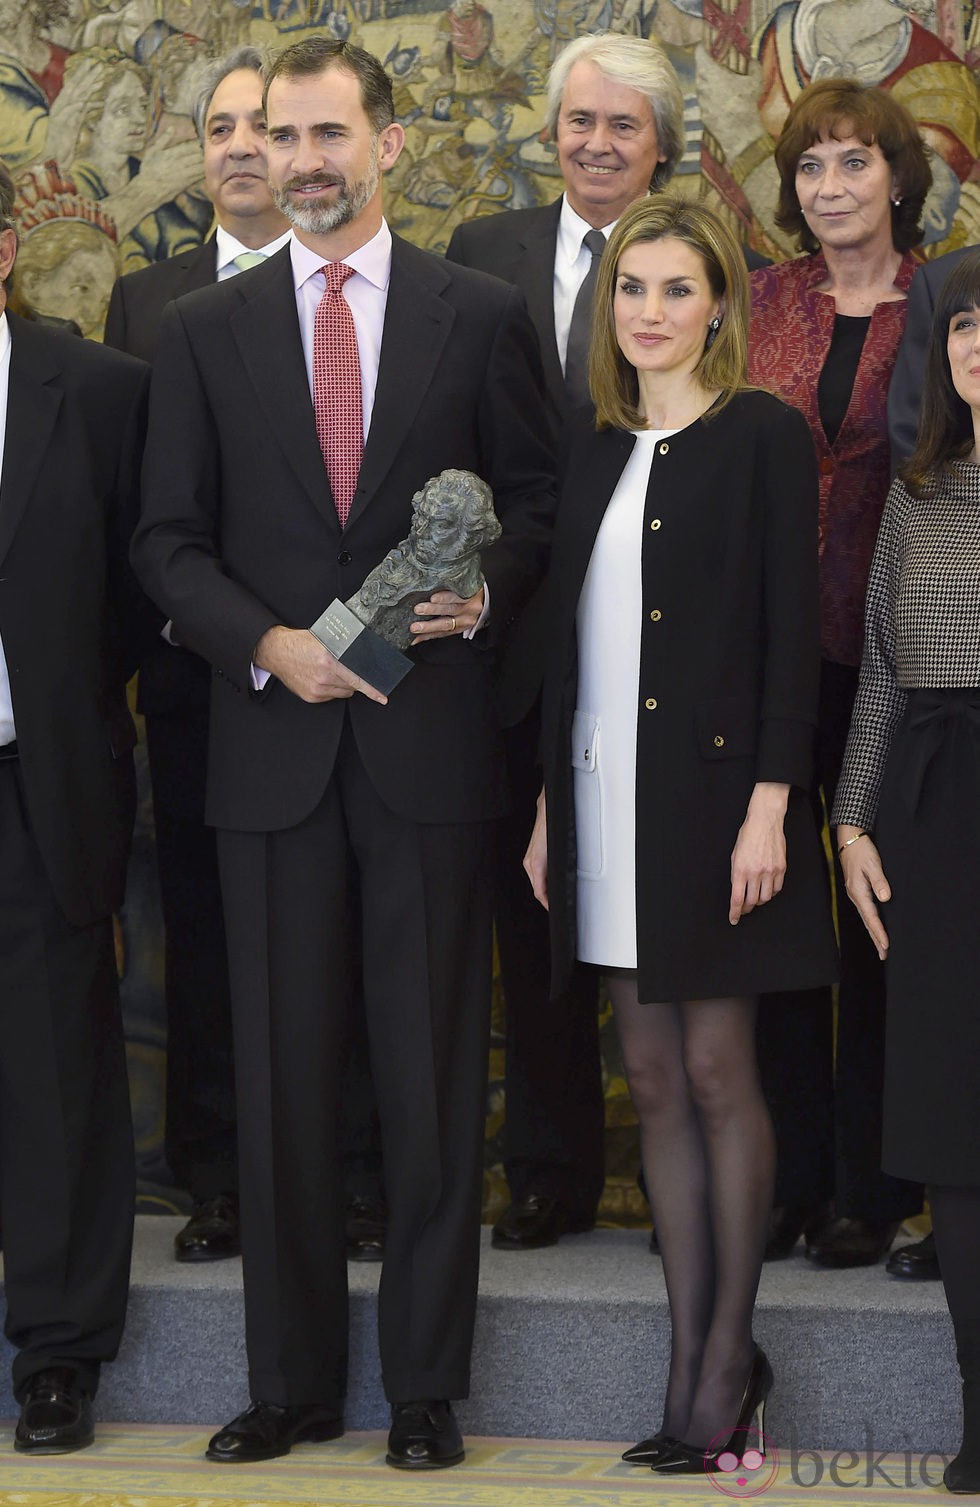 Los Reyes Felipe y Letizia con el Goya entregado por la Academia de Cine